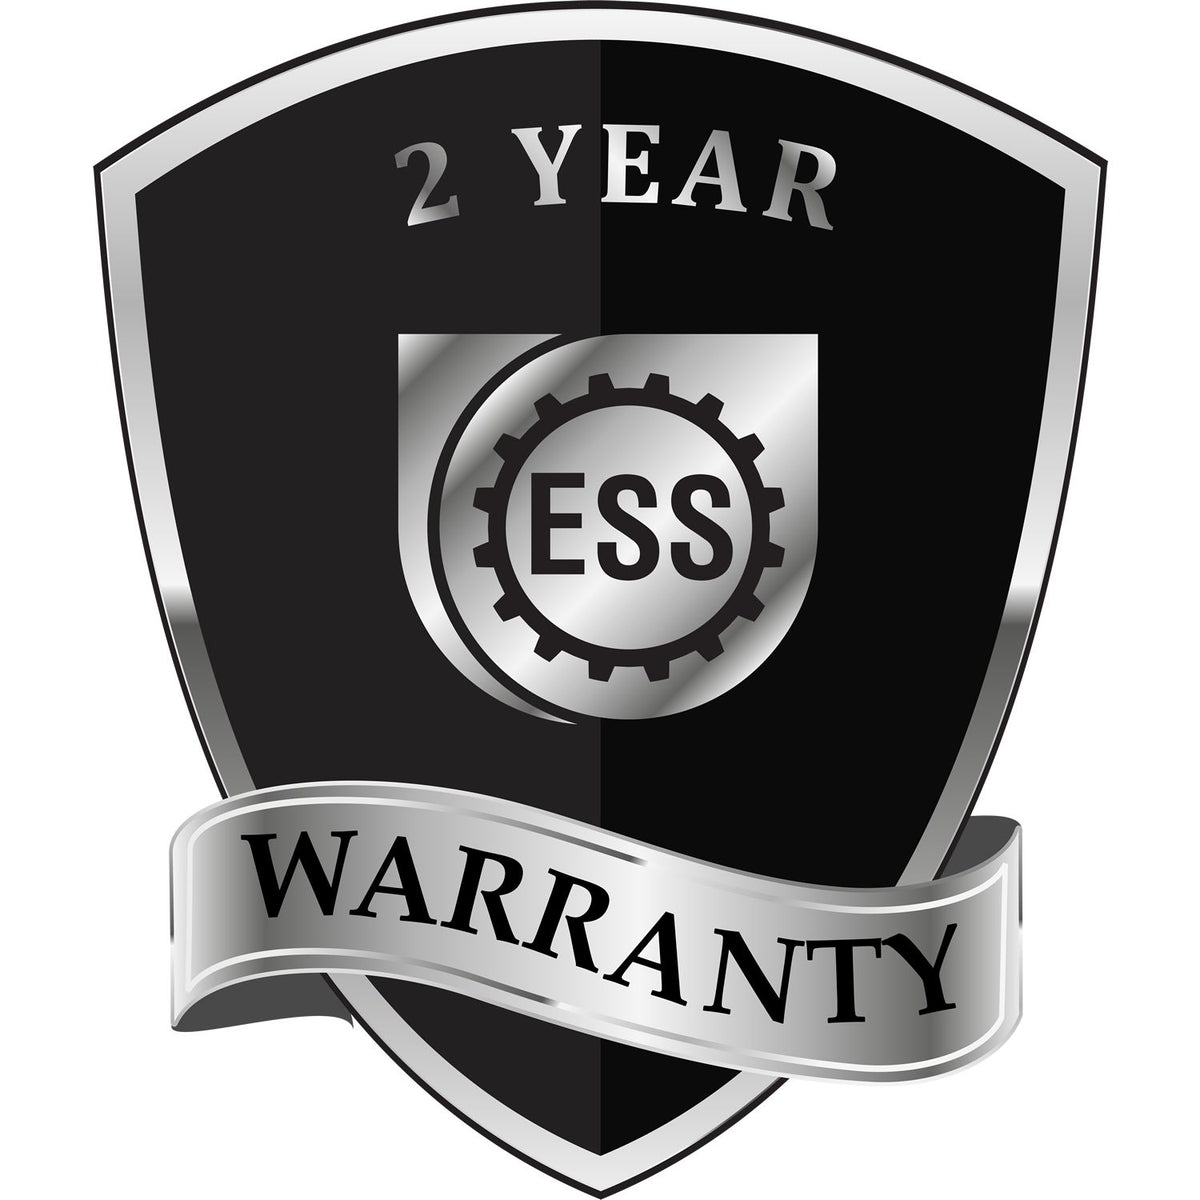 A black and silver badge or emblem showing warranty information for the Hybrid North Dakota Land Surveyor Seal